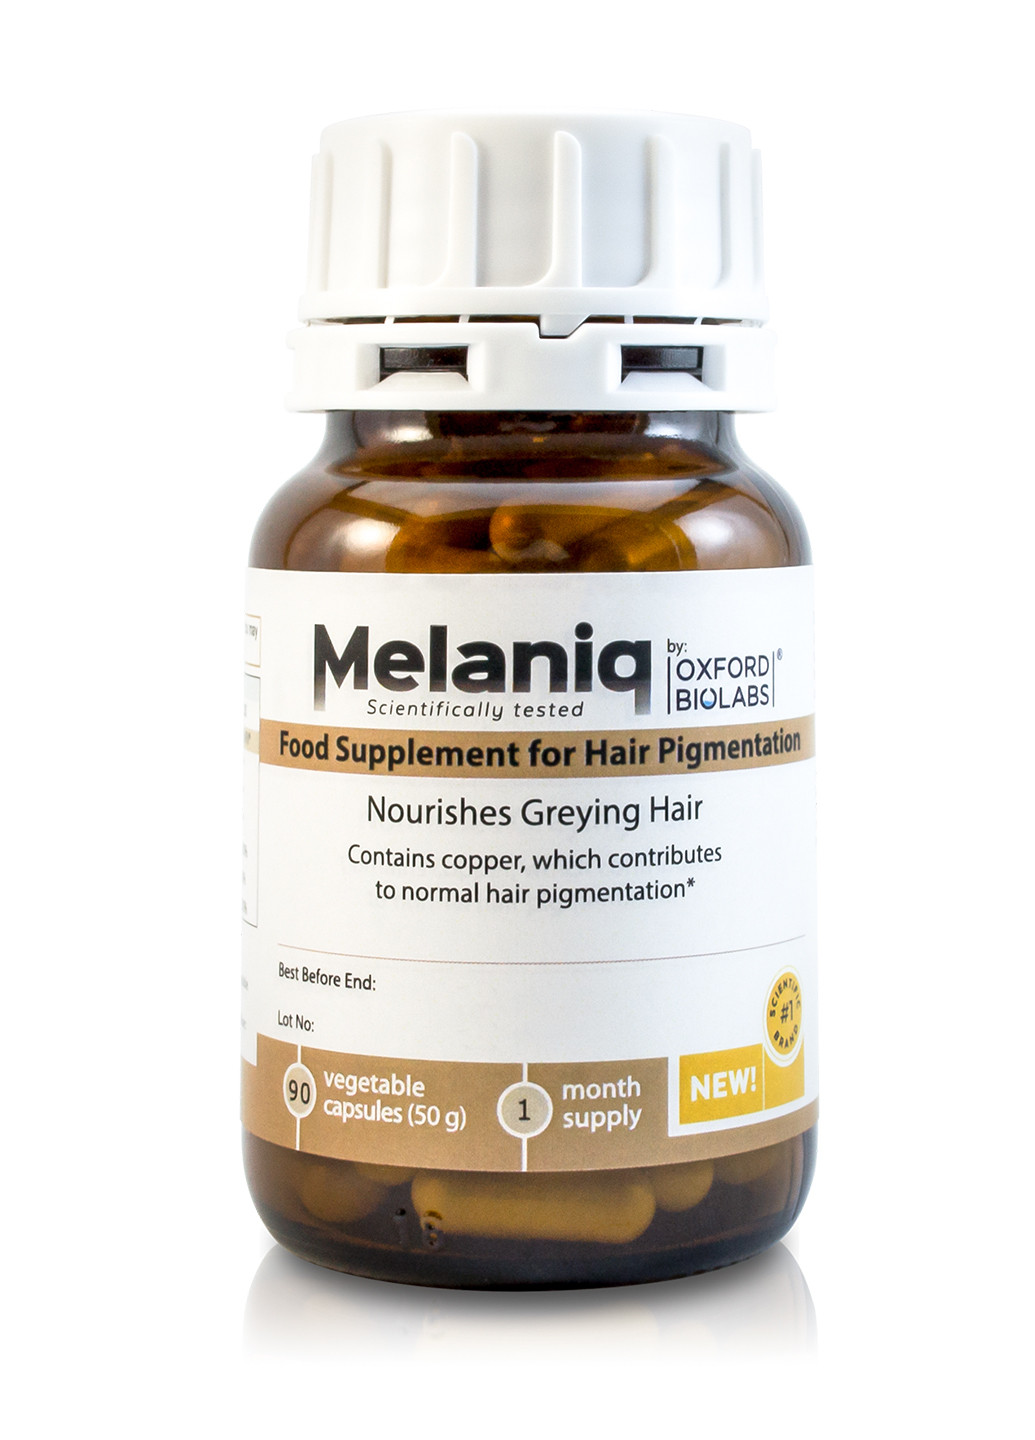 Mолекулярна добавка для підтримання кольору волосся і профілактики ранньої сивини Melaniq® Oxford Biolabs